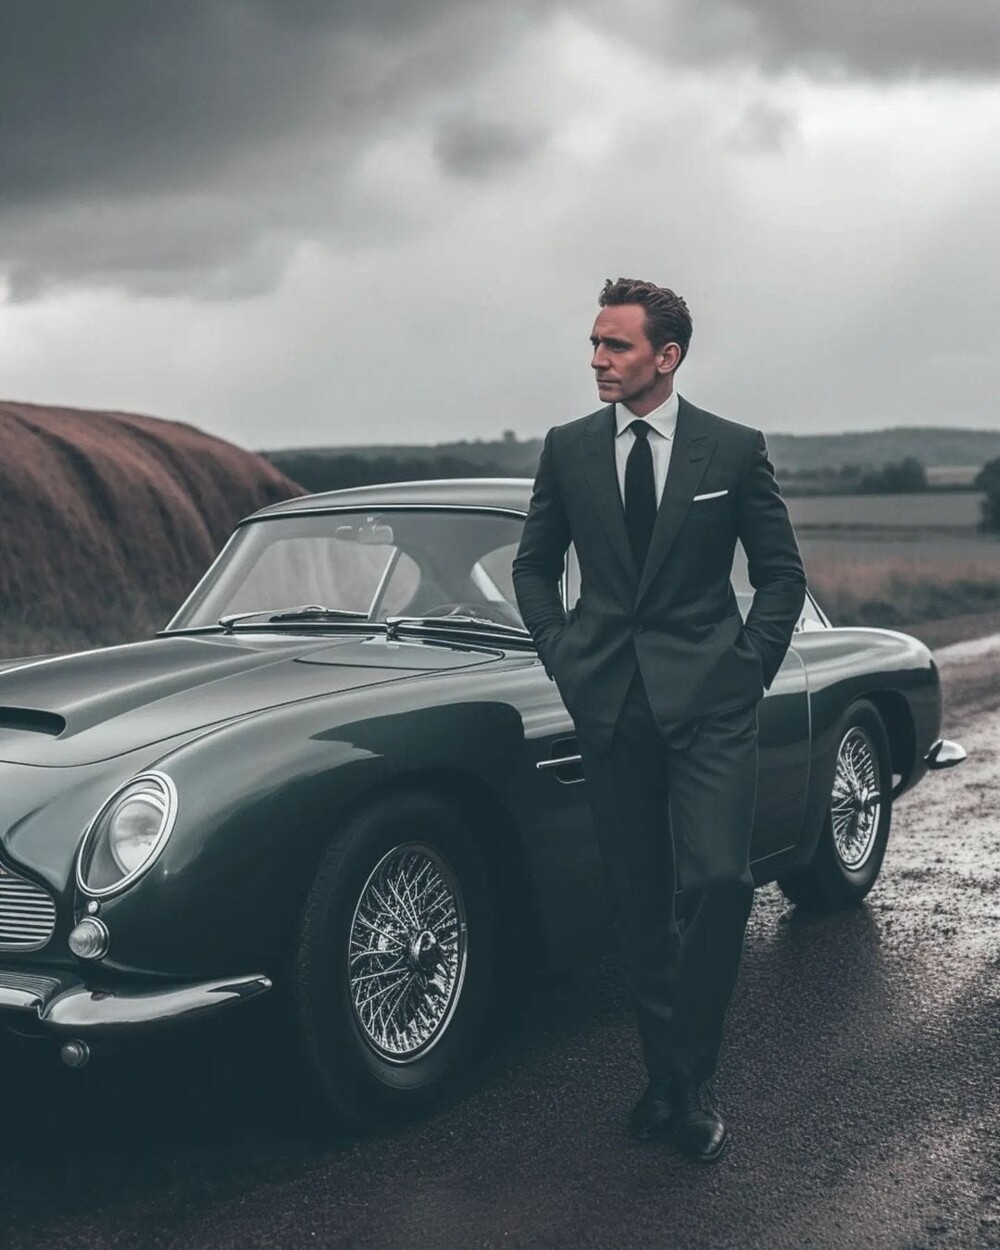 Художник показал, как 11 основных претендентов на роль нового Джеймса Бонда выглядели бы в образе агента 007